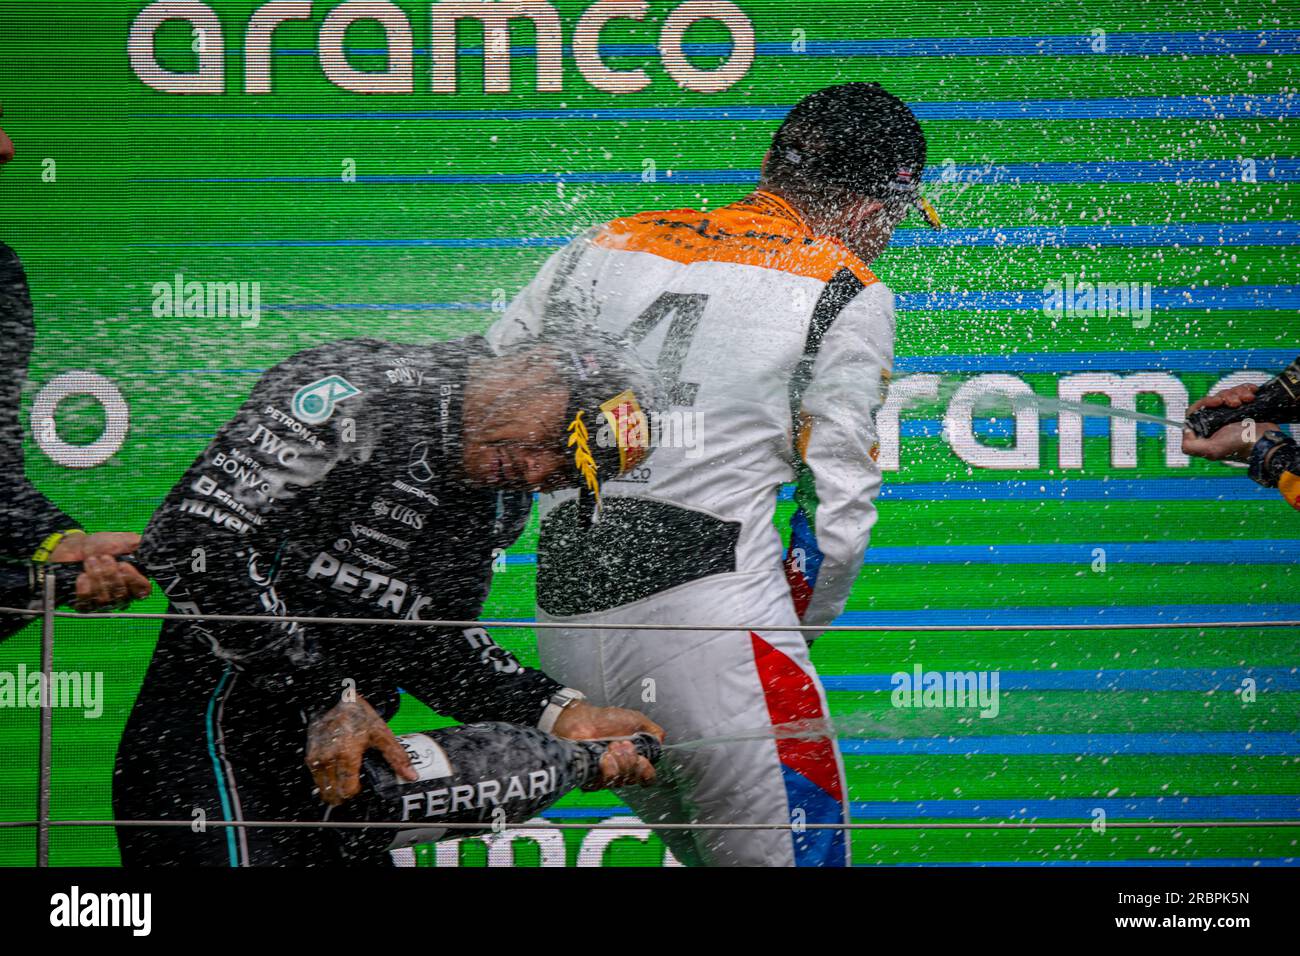 Silverstone, Royaume-Uni, juillet 09, Lando Norris, du Royaume-Uni, concourt pour McLaren F1. Jour de la course, ronde 11 du championnat de Formule 1 2023. Crédit : Michael Potts/Alamy Live News Banque D'Images